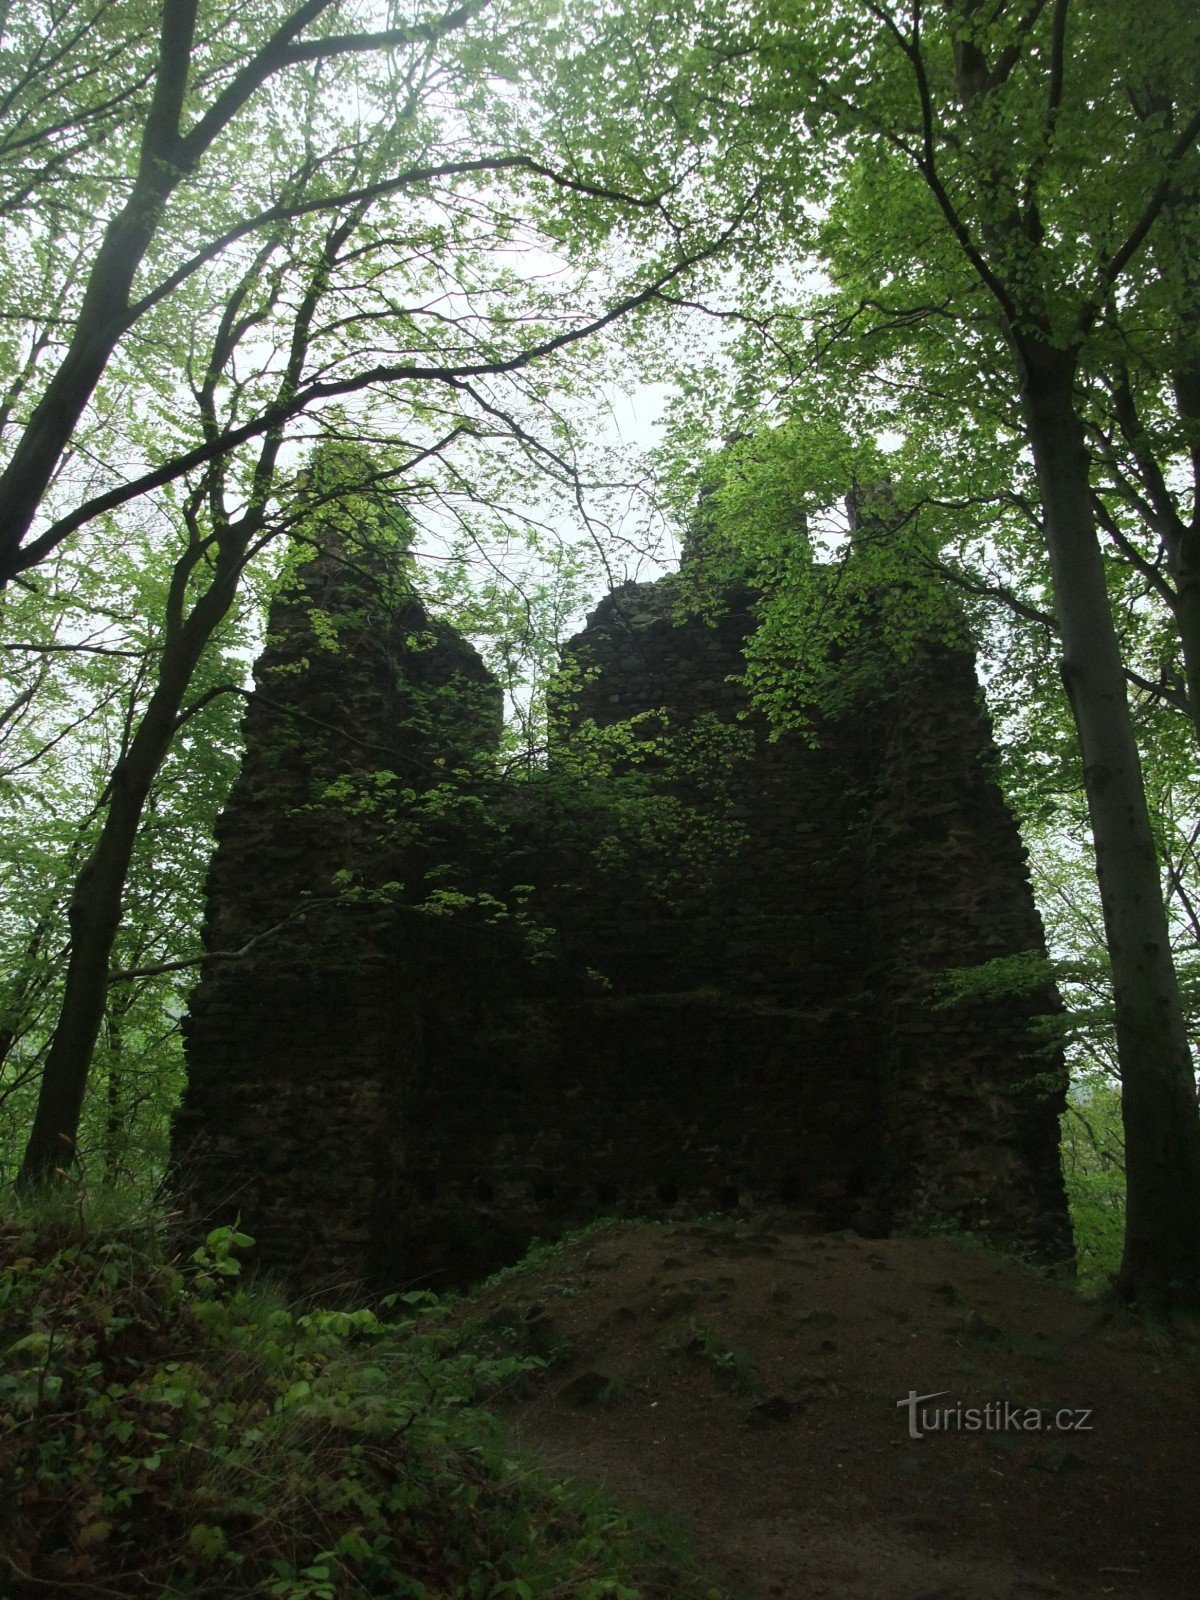 Het mysterieuze Kyšperk-kasteel in het Ertsgebergte